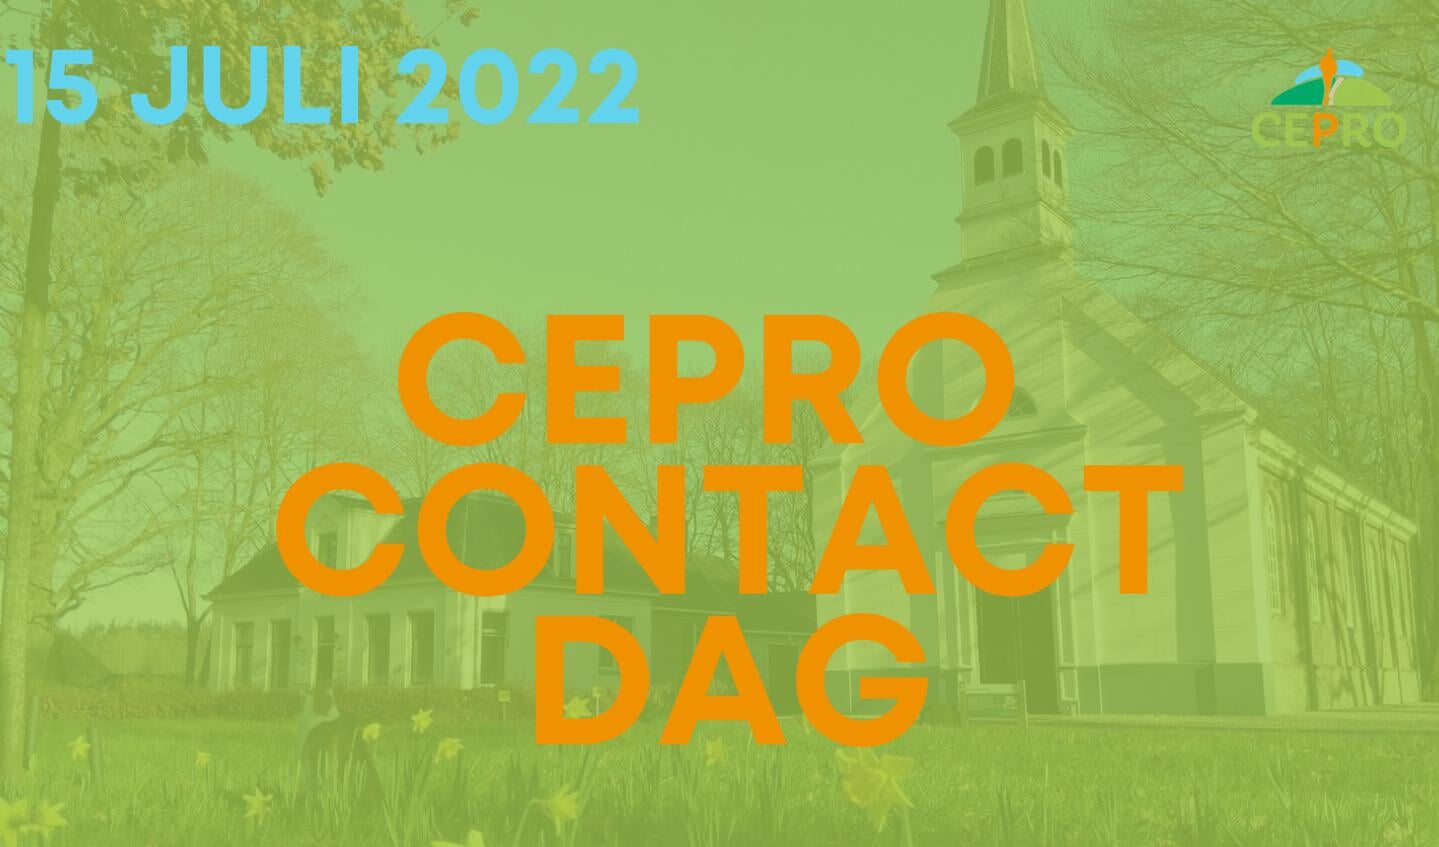 Op 15 juli wordt de eerste CEPRO contactdag gehouden.